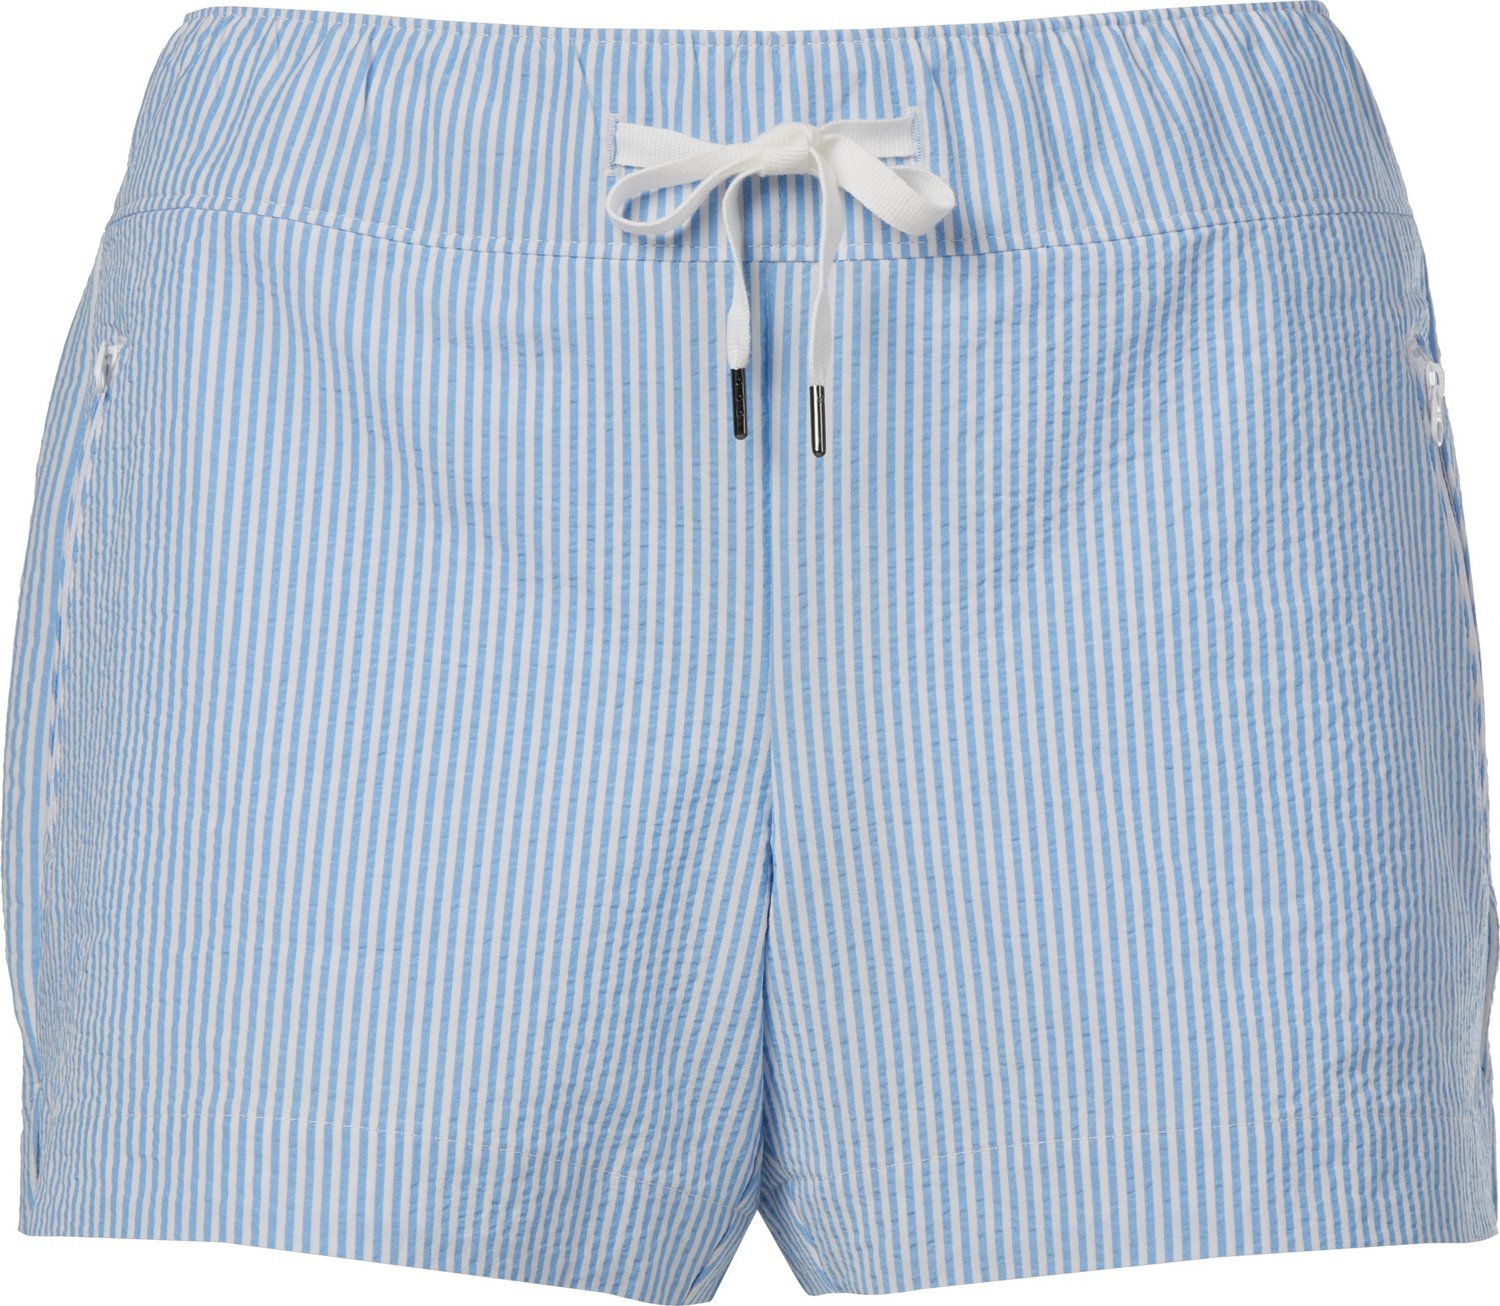 Magellan Outdoors Women's Southern Summer Seersucker Shorty Shorts ...